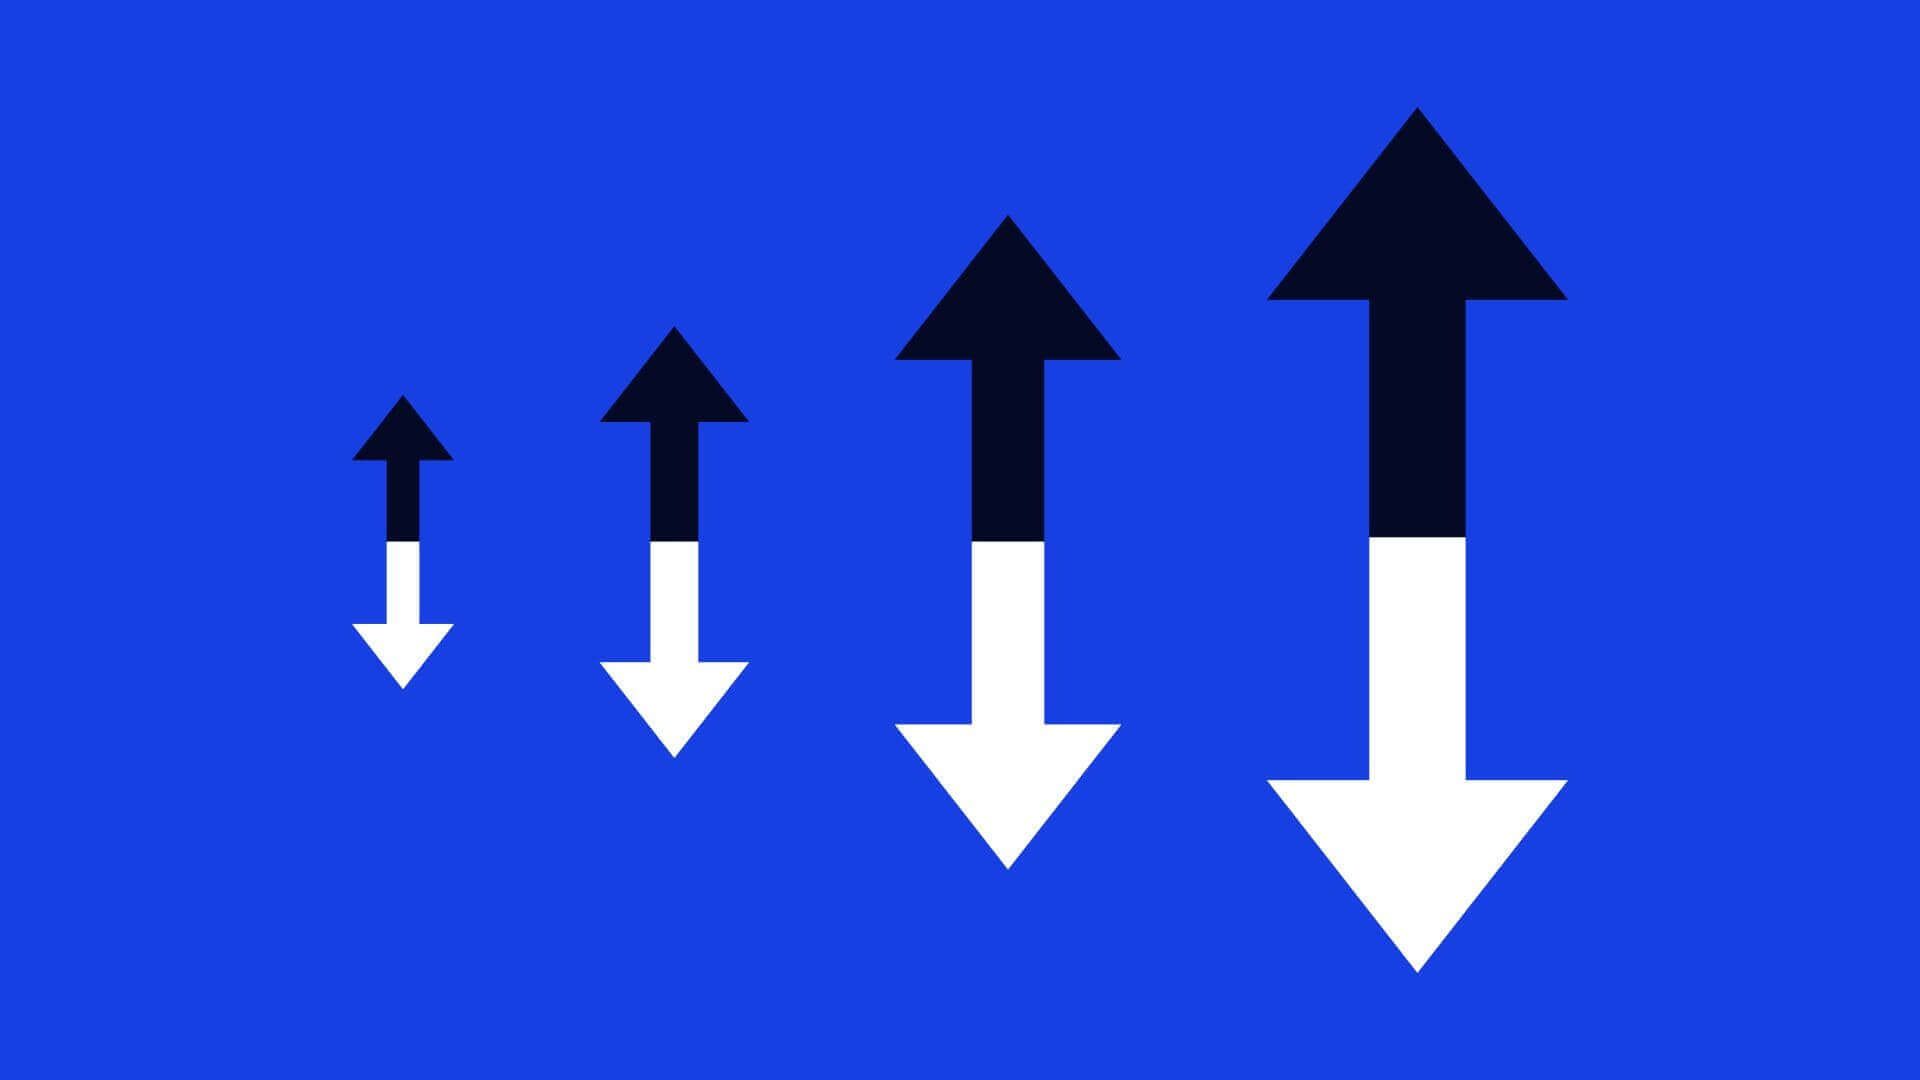 ein Diagramm mit Pfeilen, die sowohl nach oben als auch nach unten exponentiell wachsen